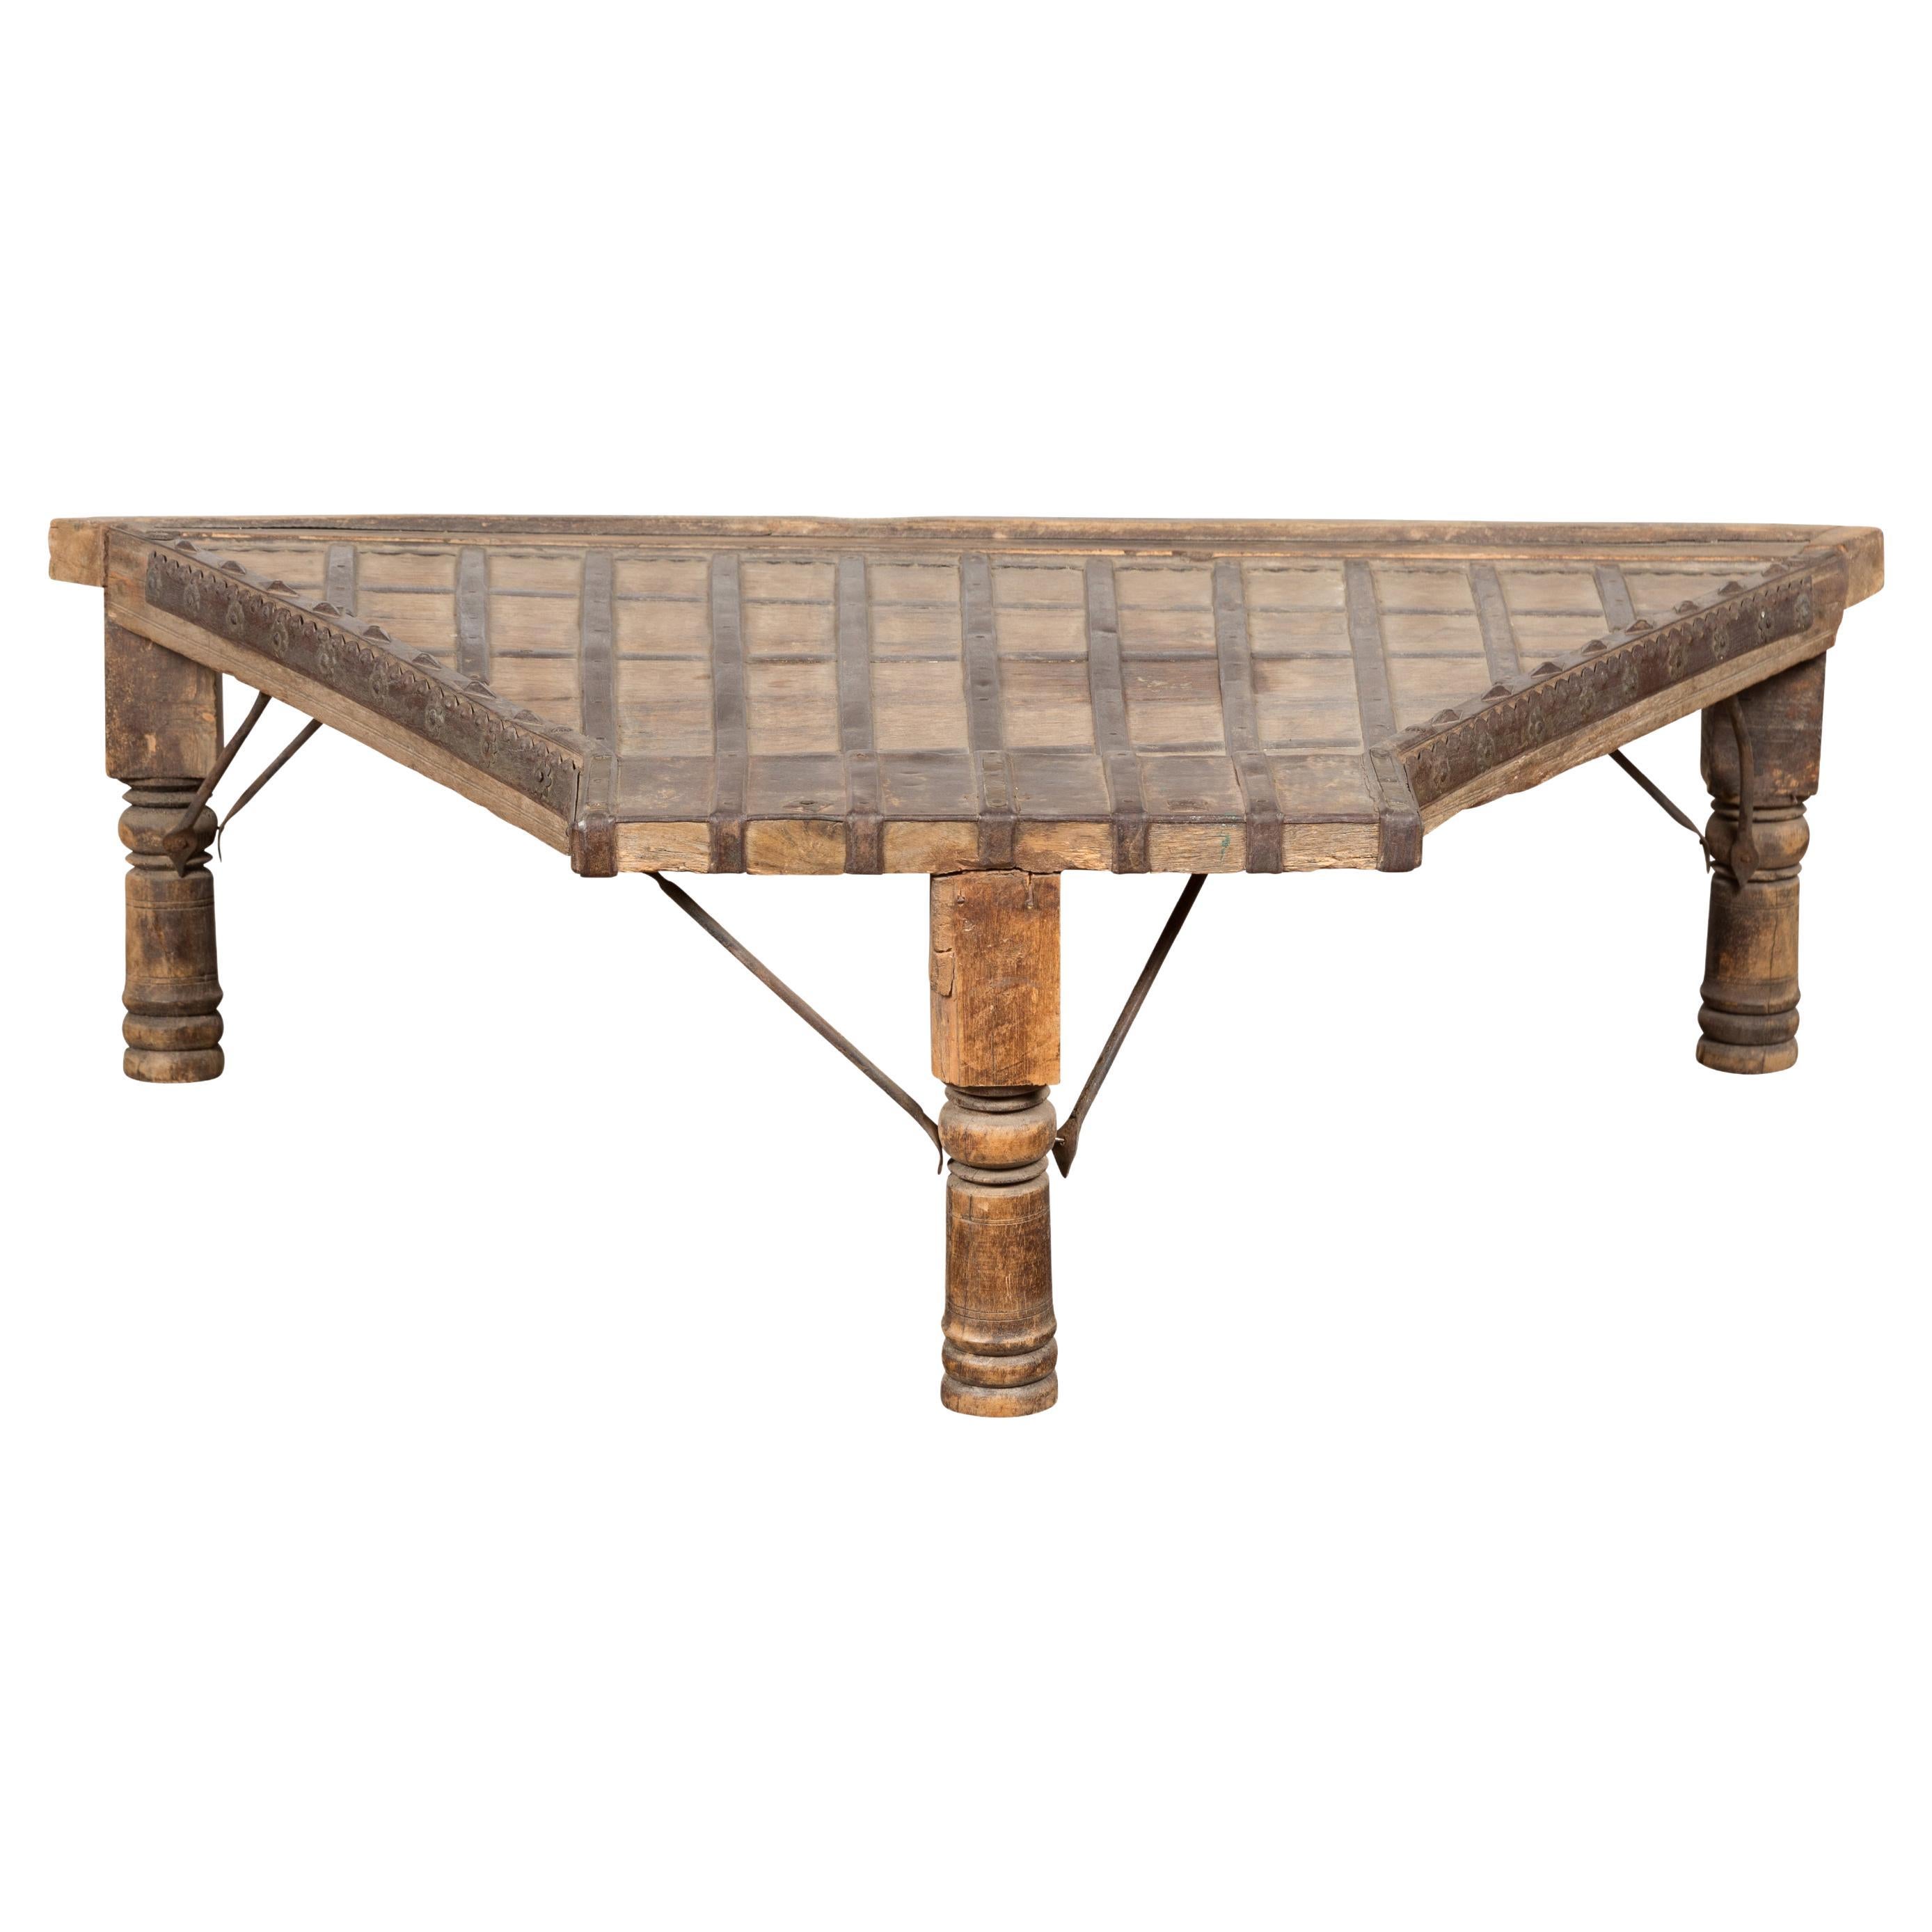 Chariot Ampoule indienne du 19ème siècle en bois transformé en table basse avec détails en fer